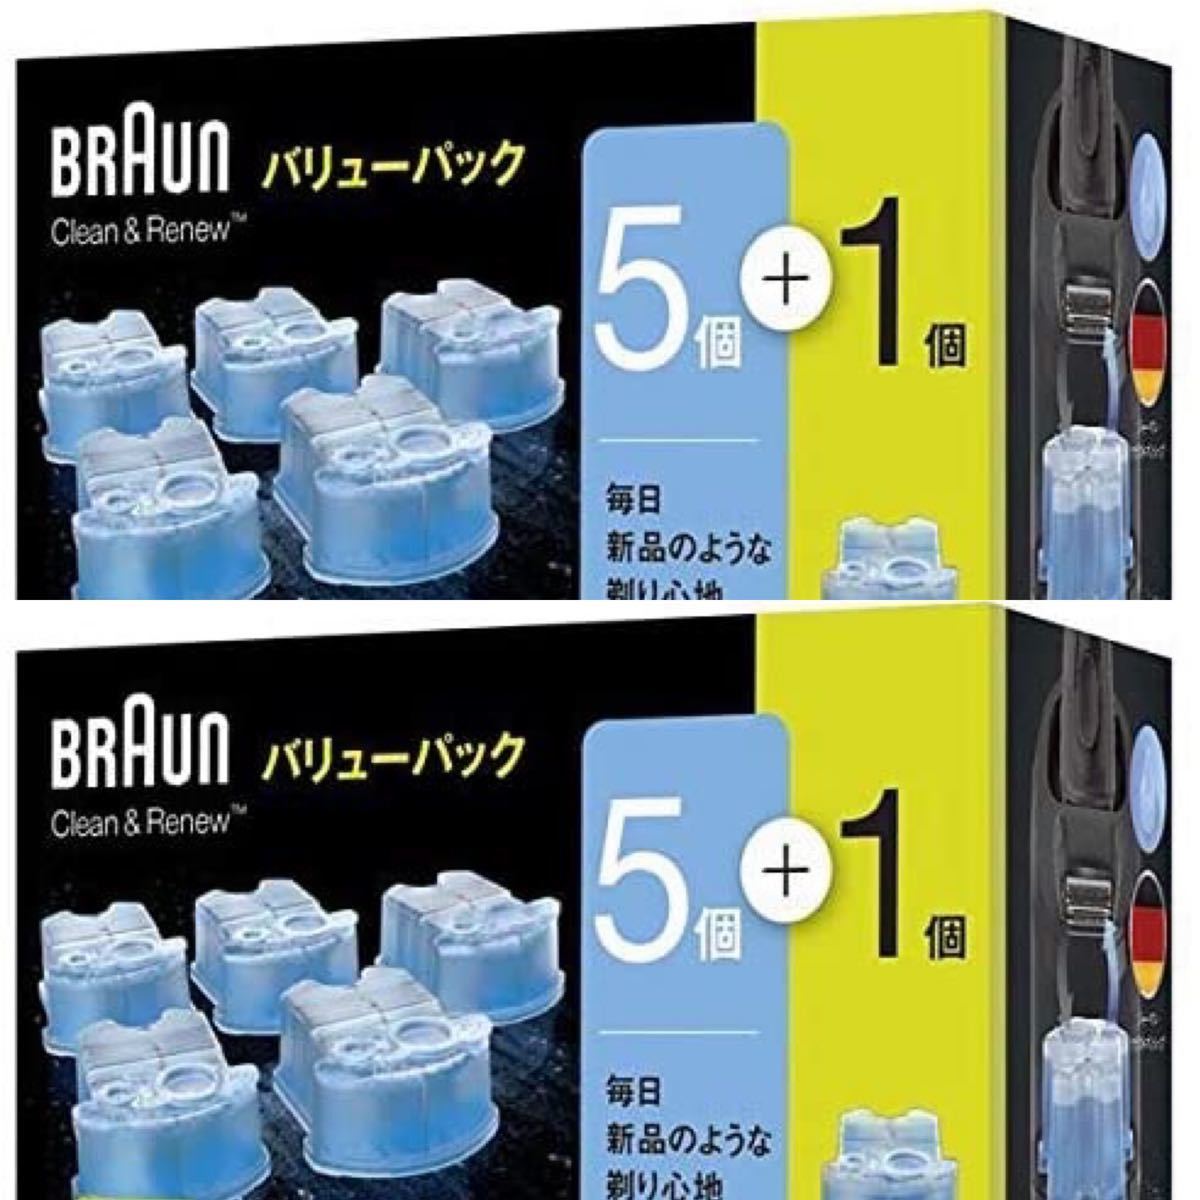 ブラウン アルコール洗浄液 交換用カートリッジ 6個セット×2箱 正規品